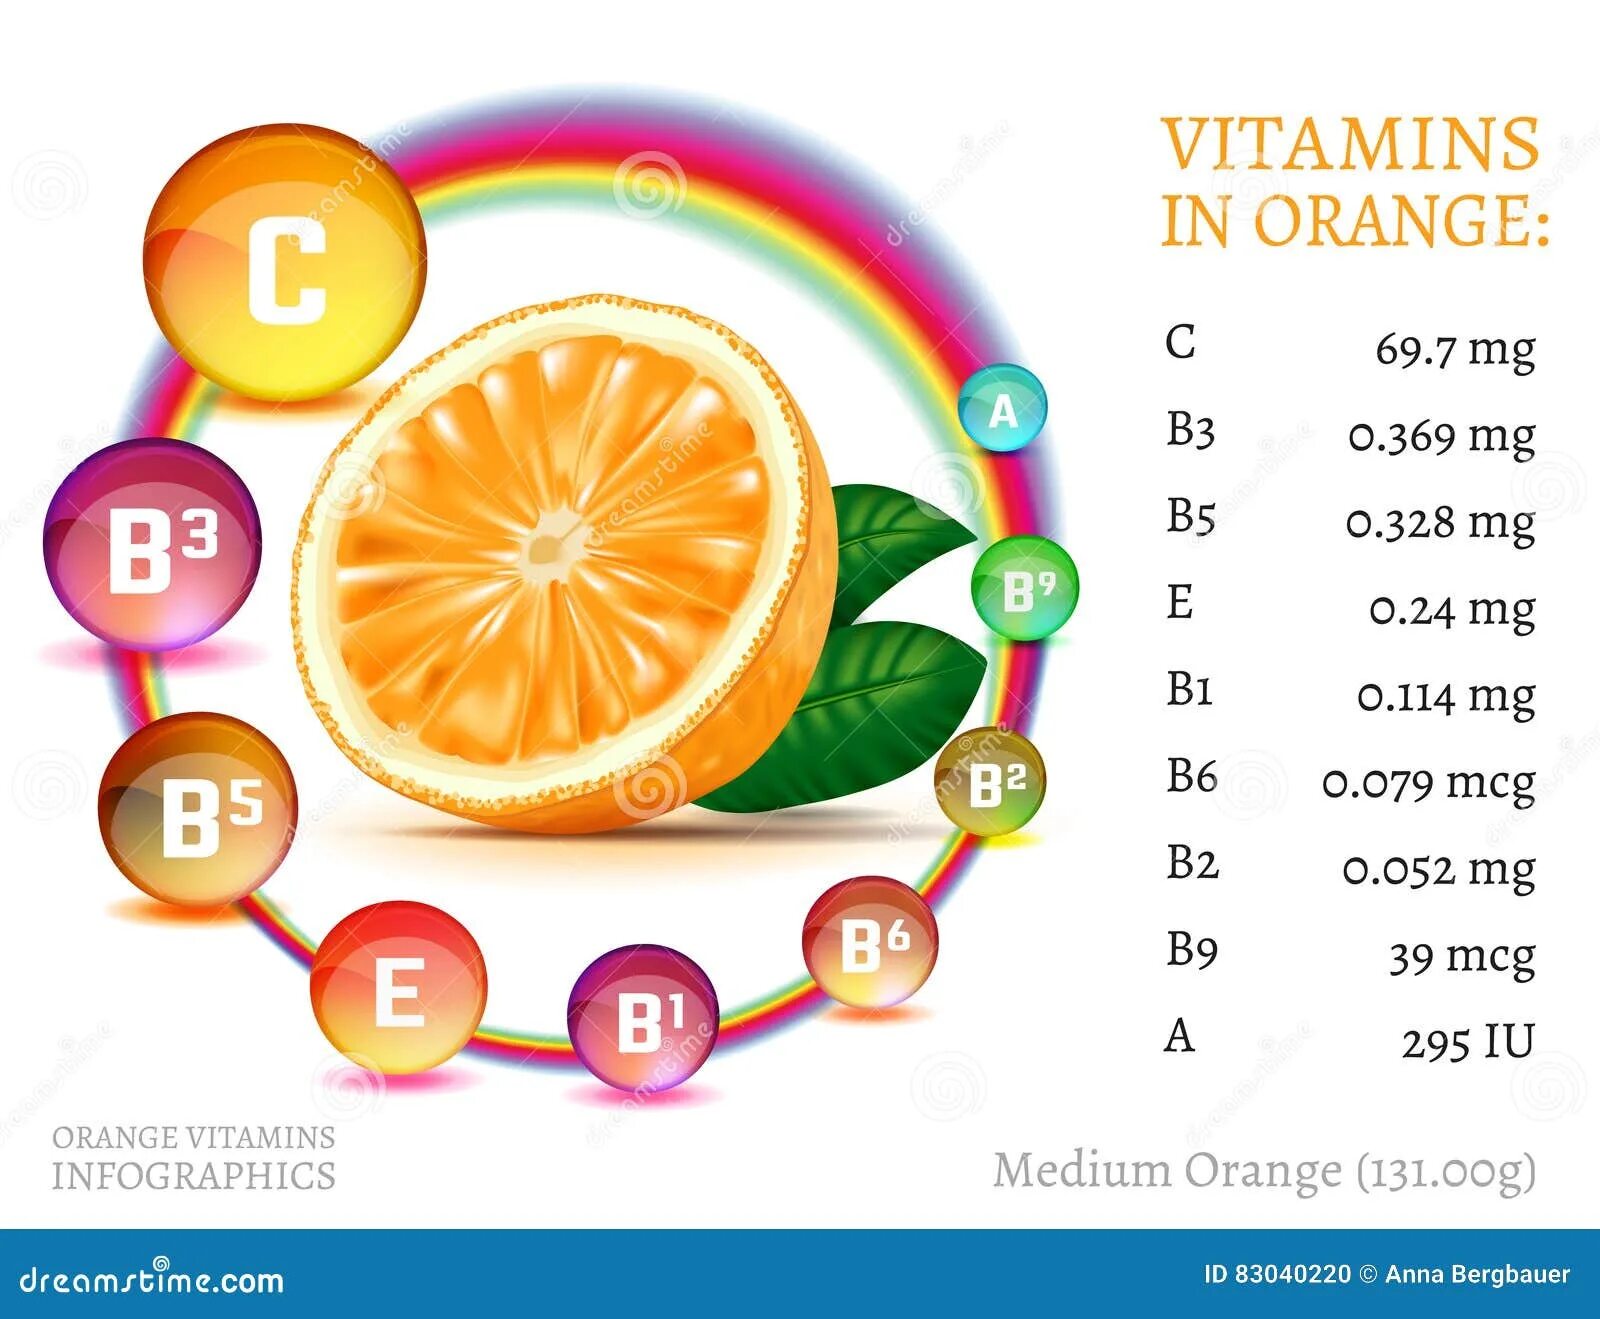 Витамины в кожуре. Апельсин пищевая ценность в 100 гр и витамины. Какие витамины есть в апельсине. Витамины содержащиеся в апельсине. Какие витамины содержатся в апельсине.